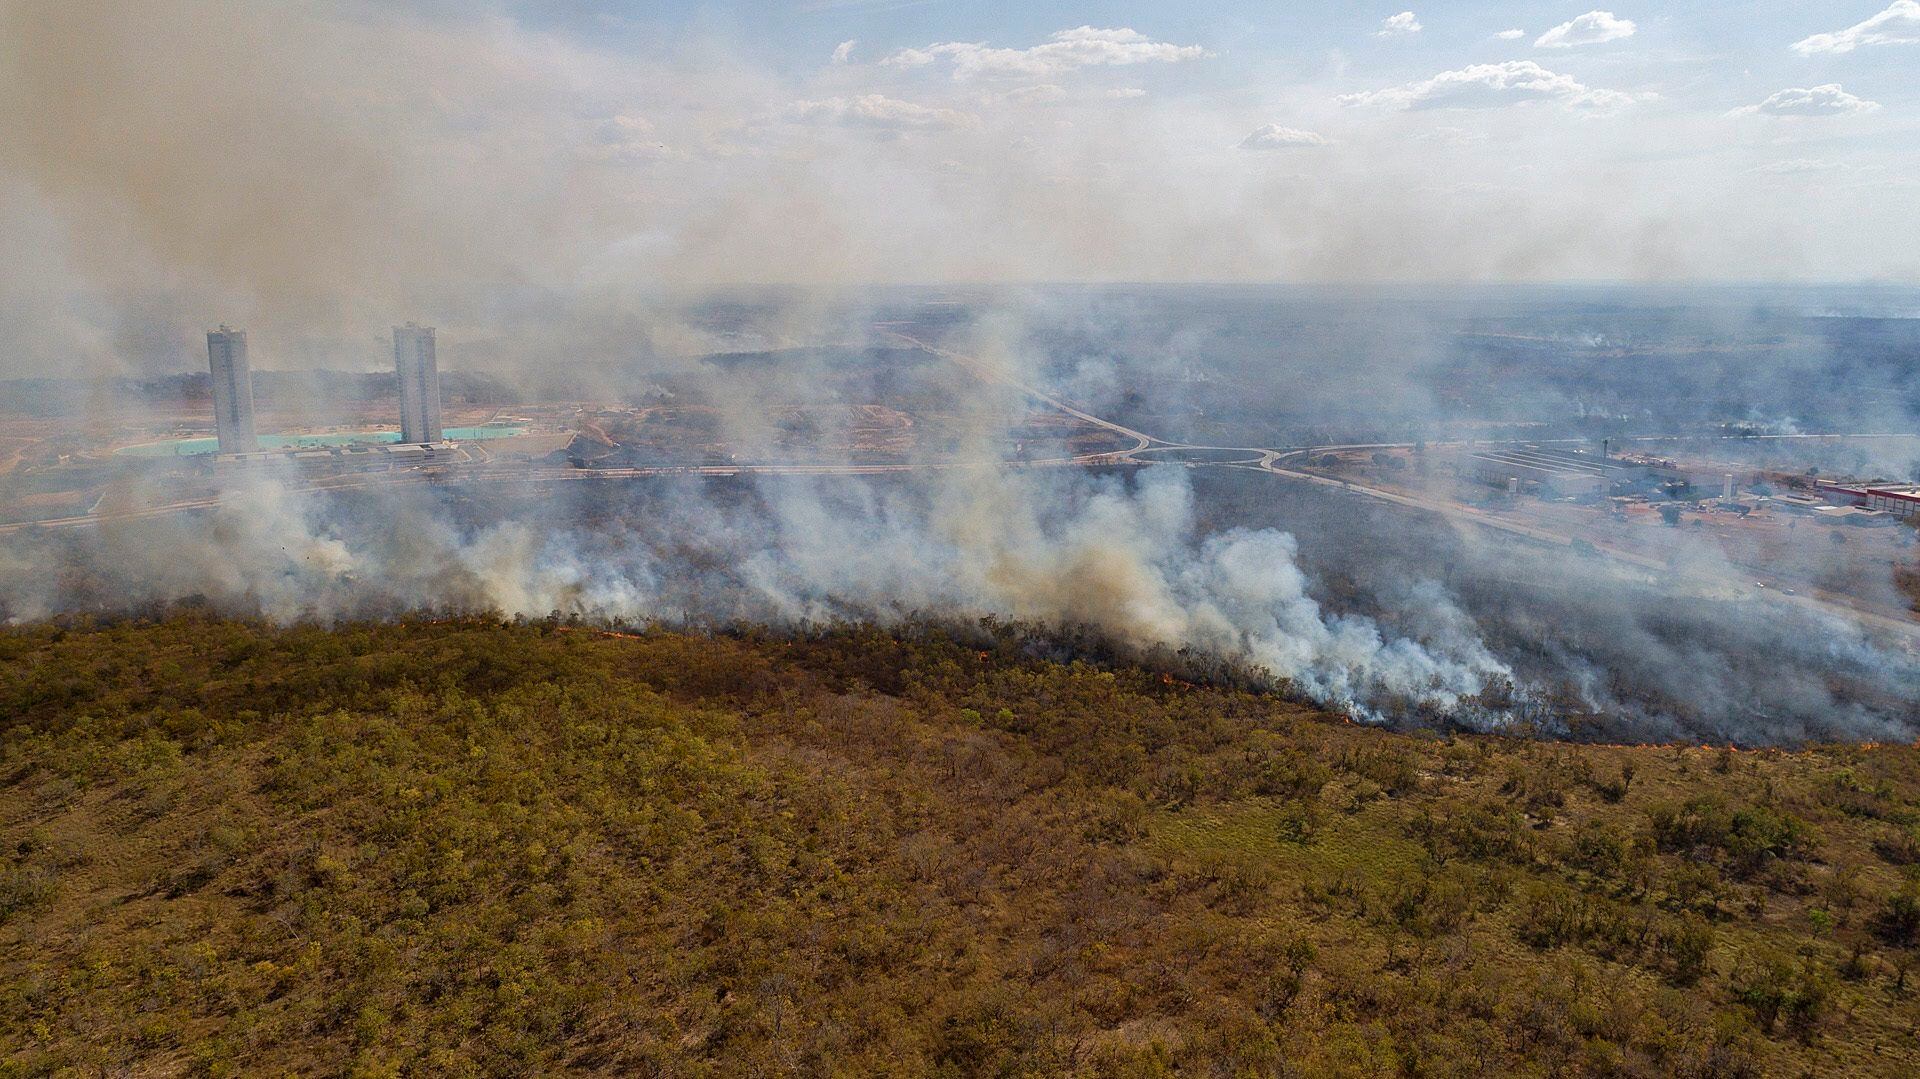 Vista general de un incendio forestal en las cercanías de la ciudad de Cuiabá en el estado de Mato Grosso (Brasil). EFE/Rogerio Florentino/Archivo 